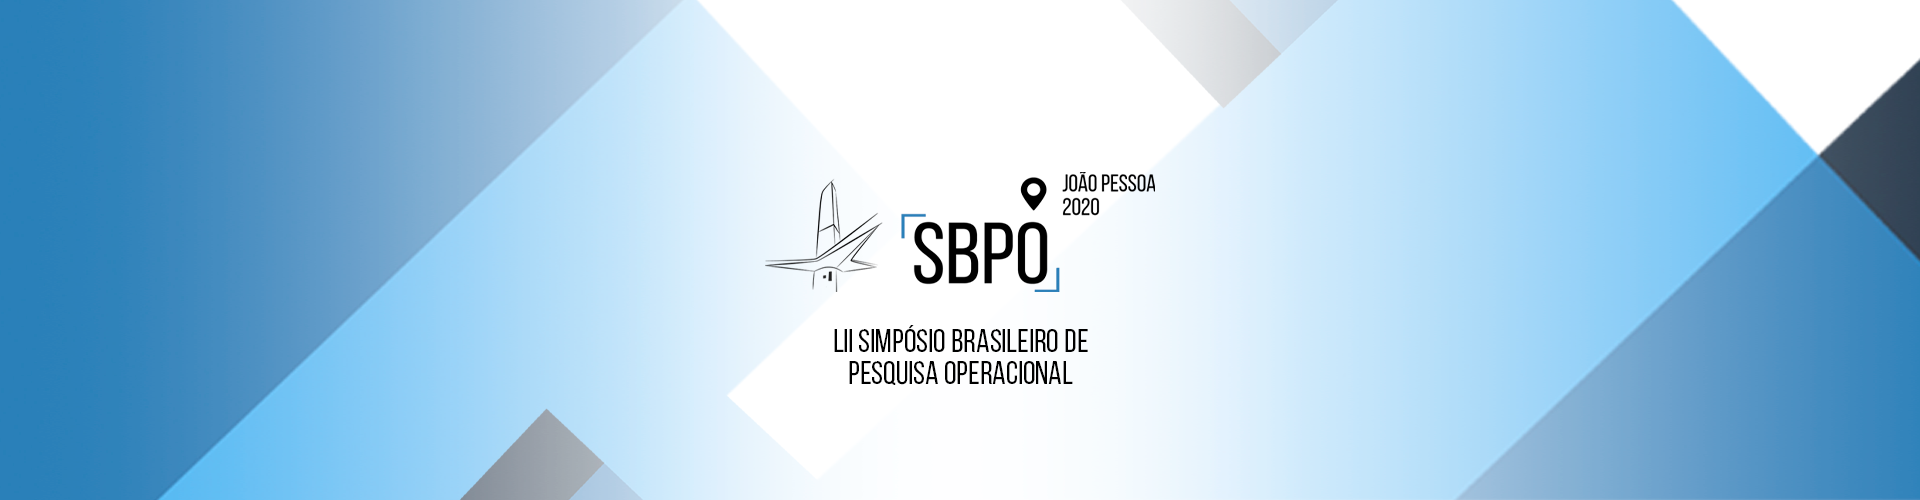 banner - SBPO 2020